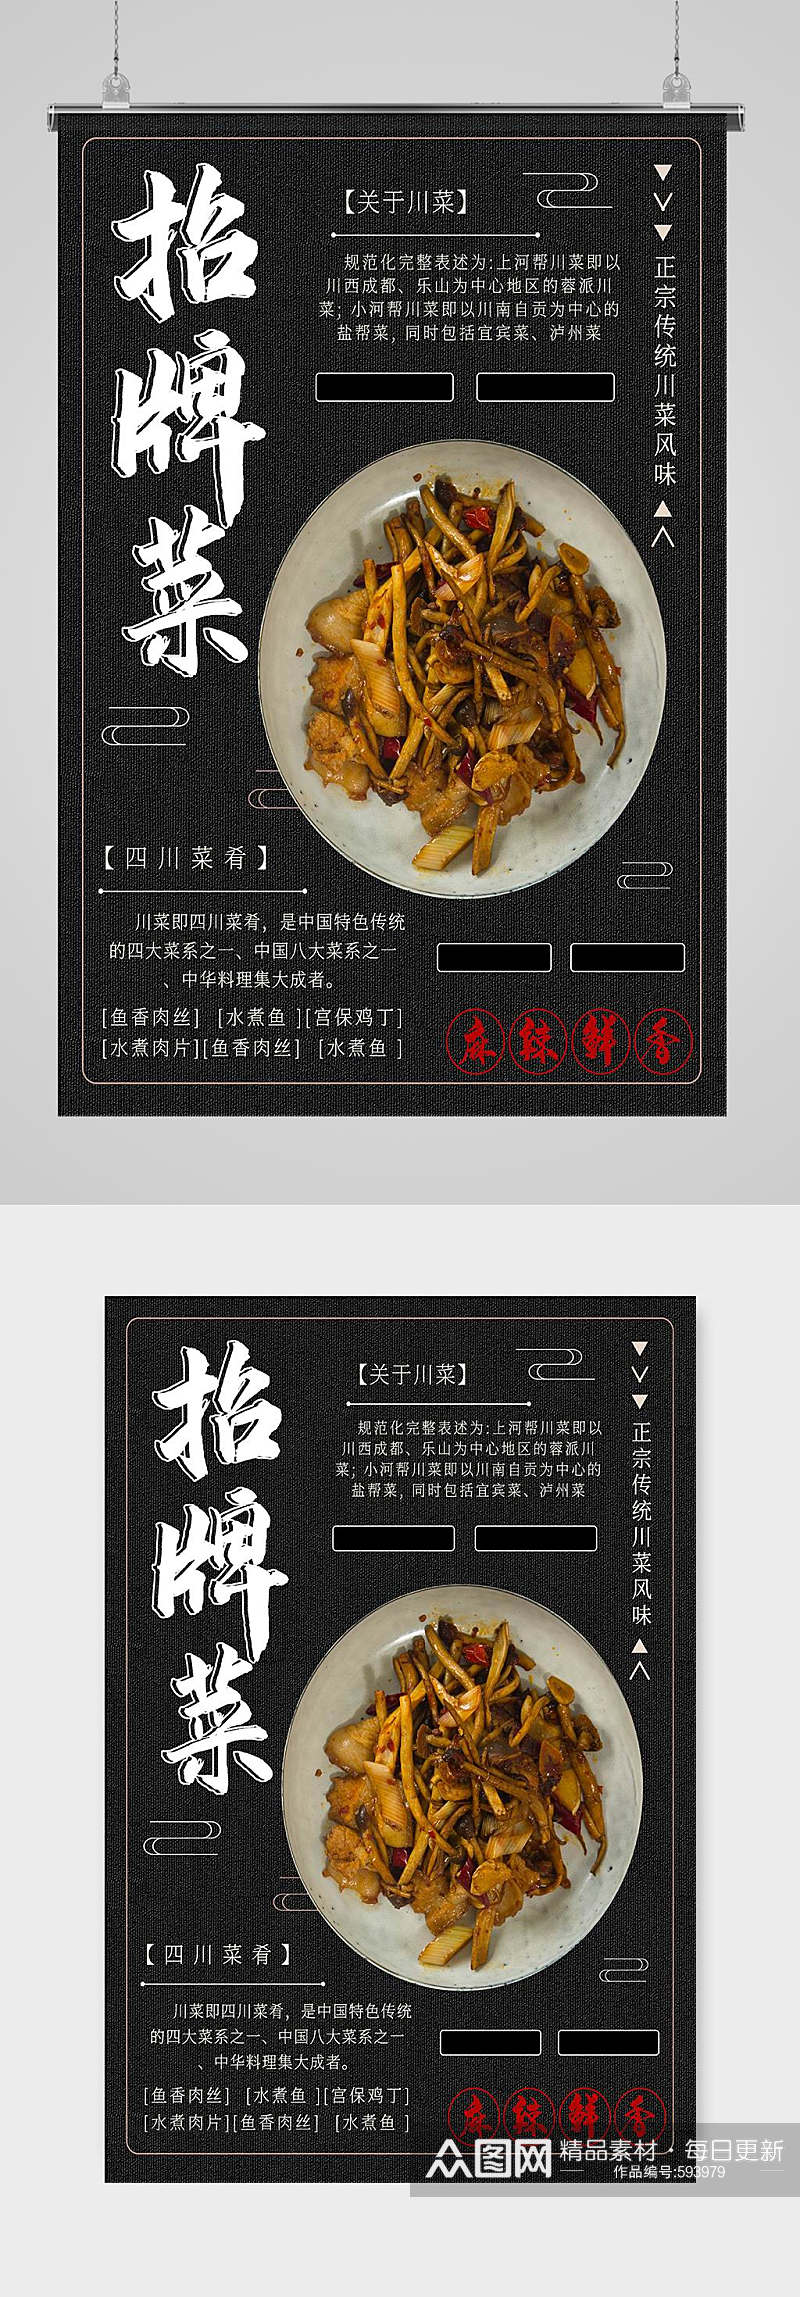 川菜美食宣传海报素材